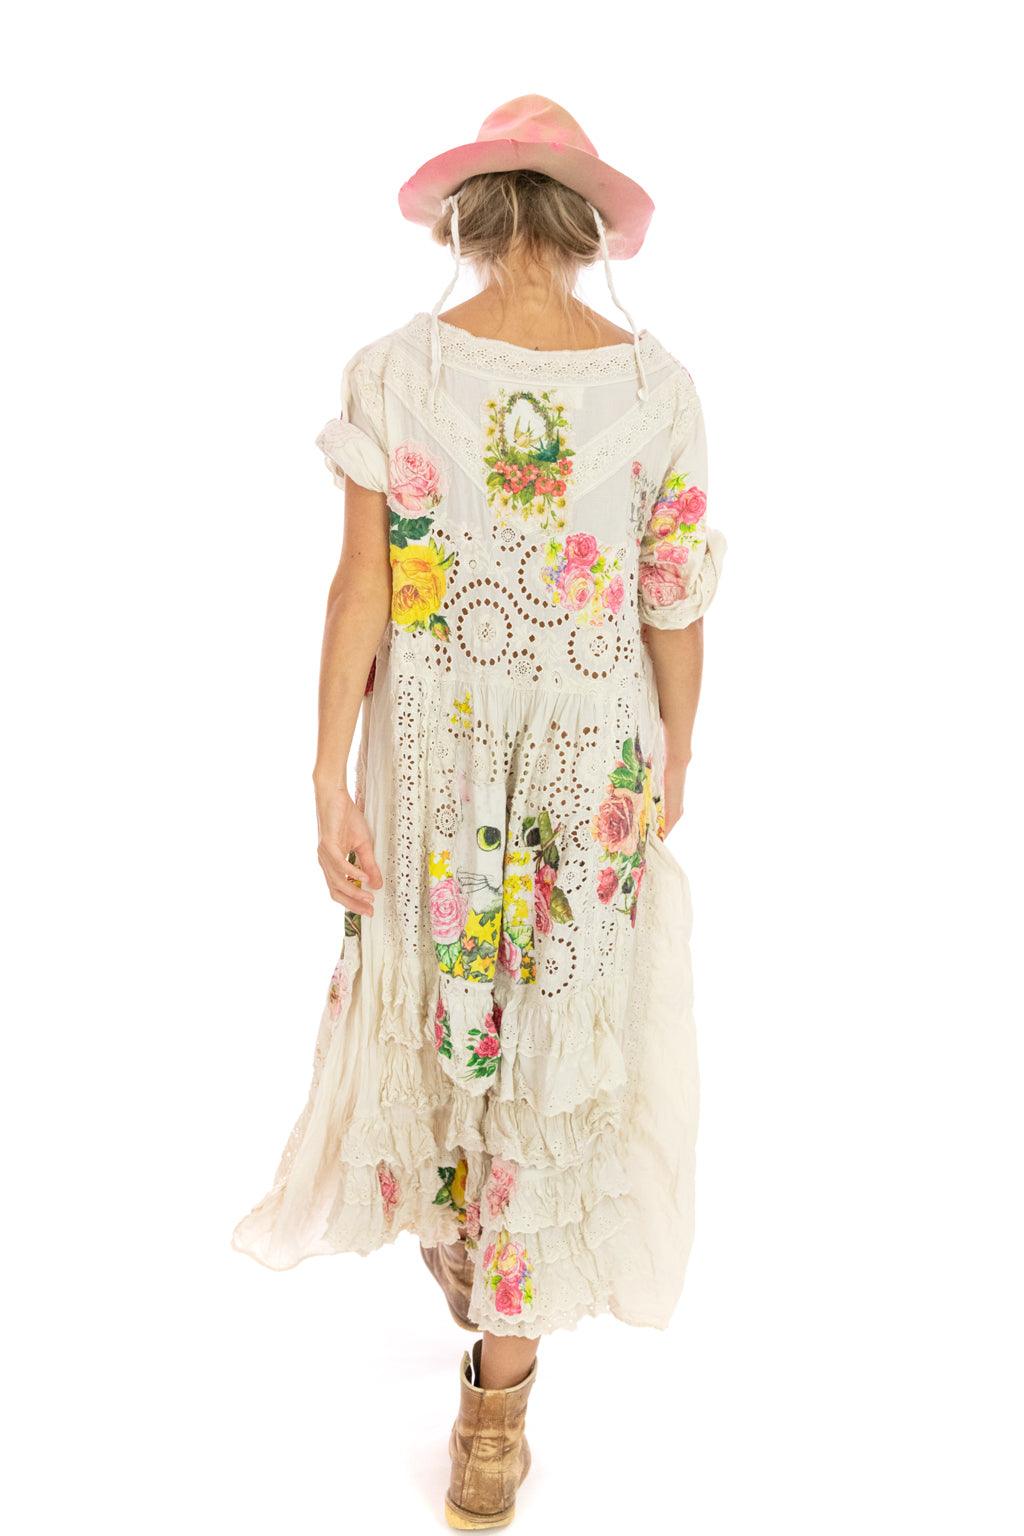 Appliqué Mattie Belle Dress - Magnolia Pearl Clothing